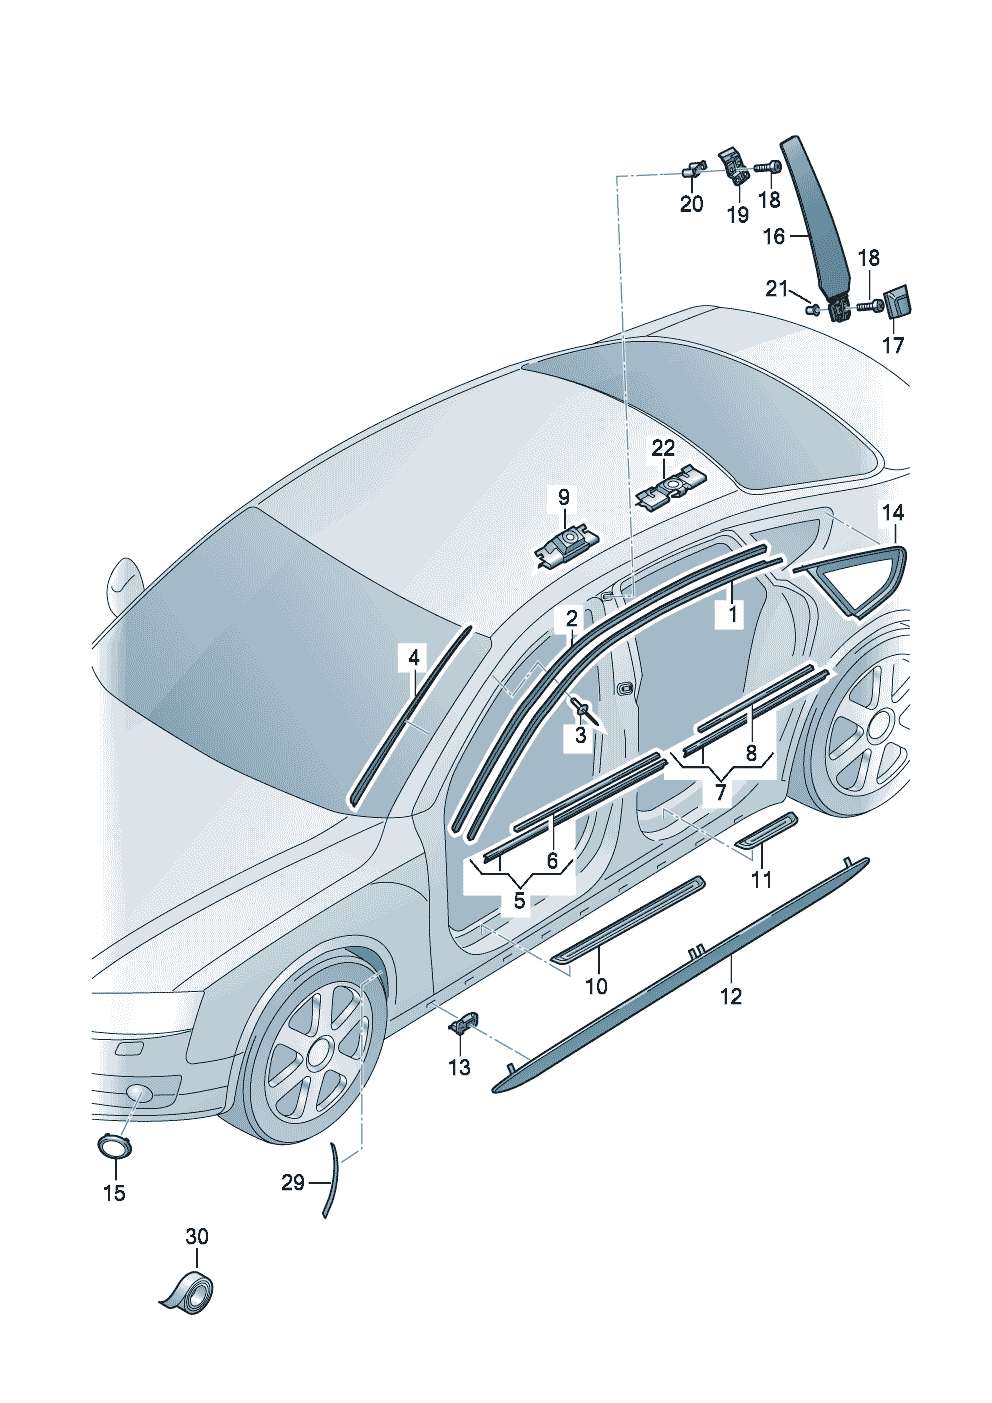 listwa dachowa ozdobnaodrzutnik wodyuszczelka zgarniająca<br>z listwą ozdobnąListwa progowaochrona lakieru przed zarysow.nakladka slupka  b  - Audi A5/S5 Coupe/Sportback - a5co